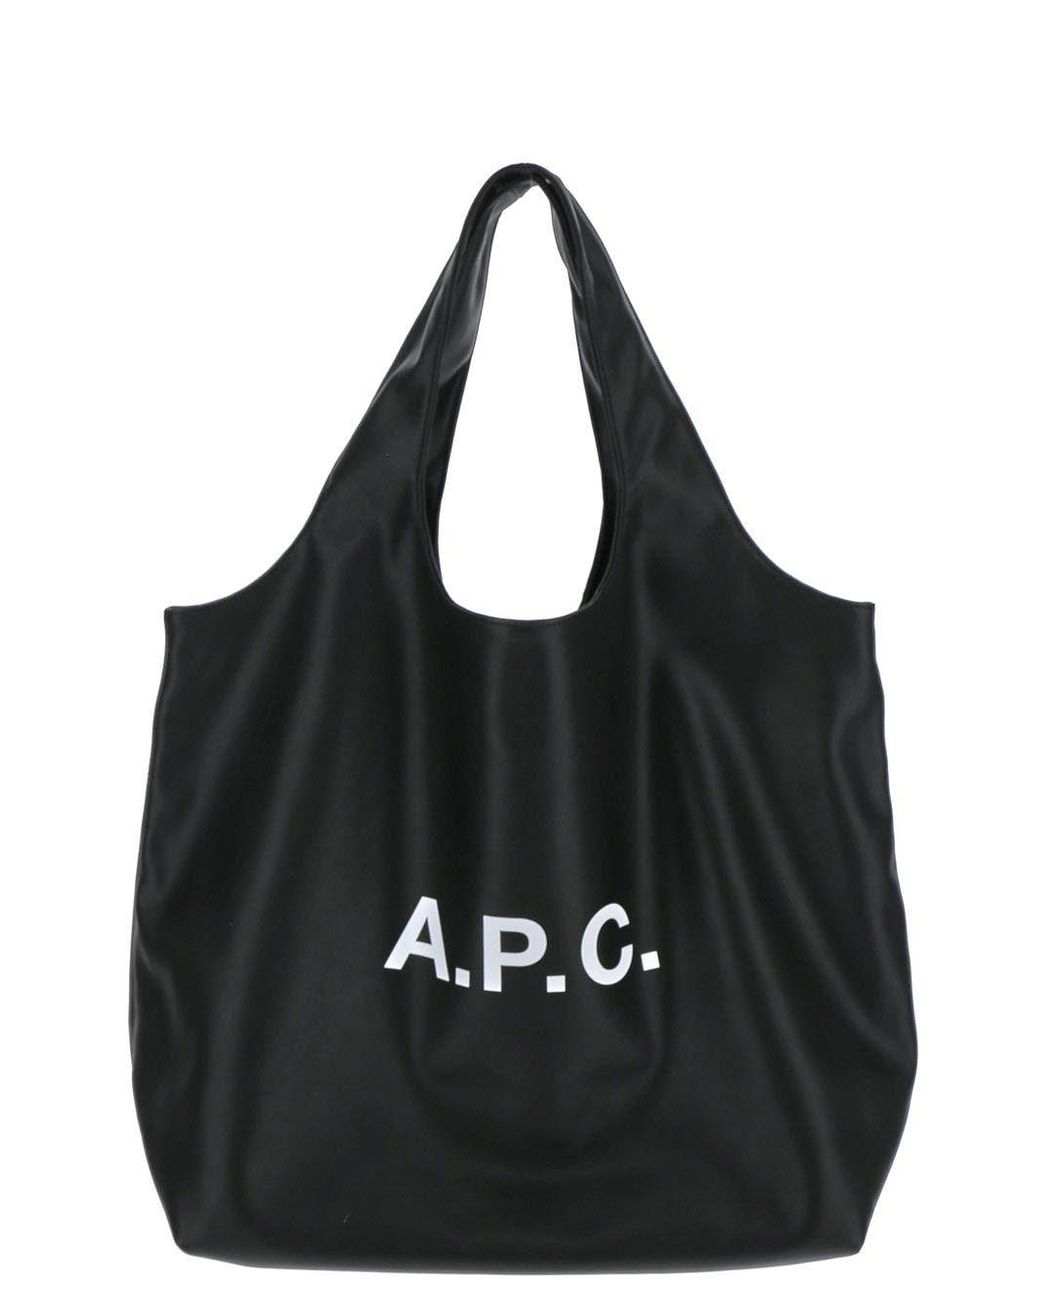 A.P.C. Ninon Tote Bag in Black | Lyst